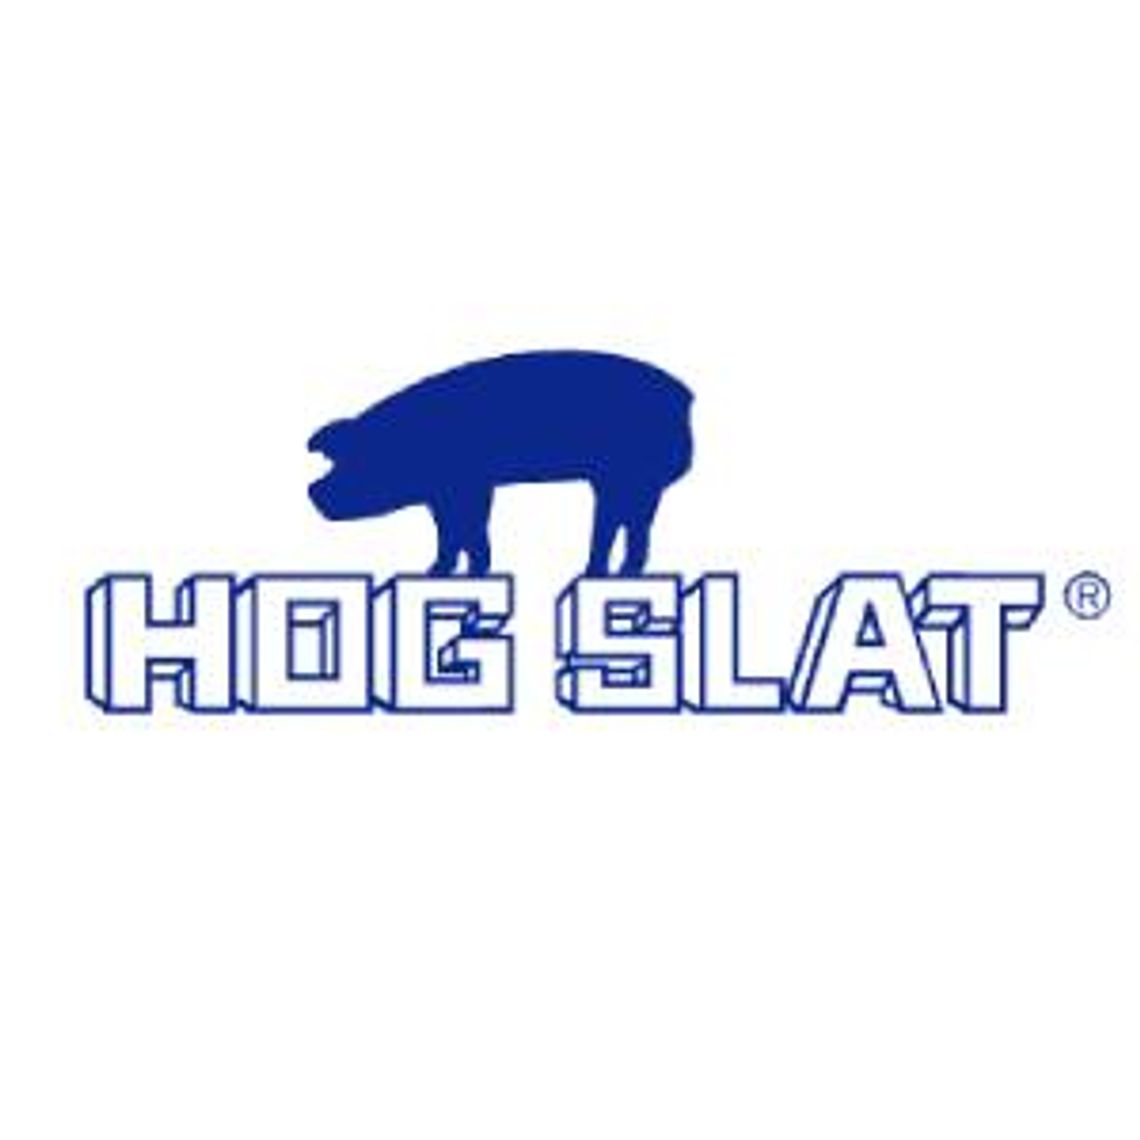 Nagrzewnice ERMAF - Hog Slat